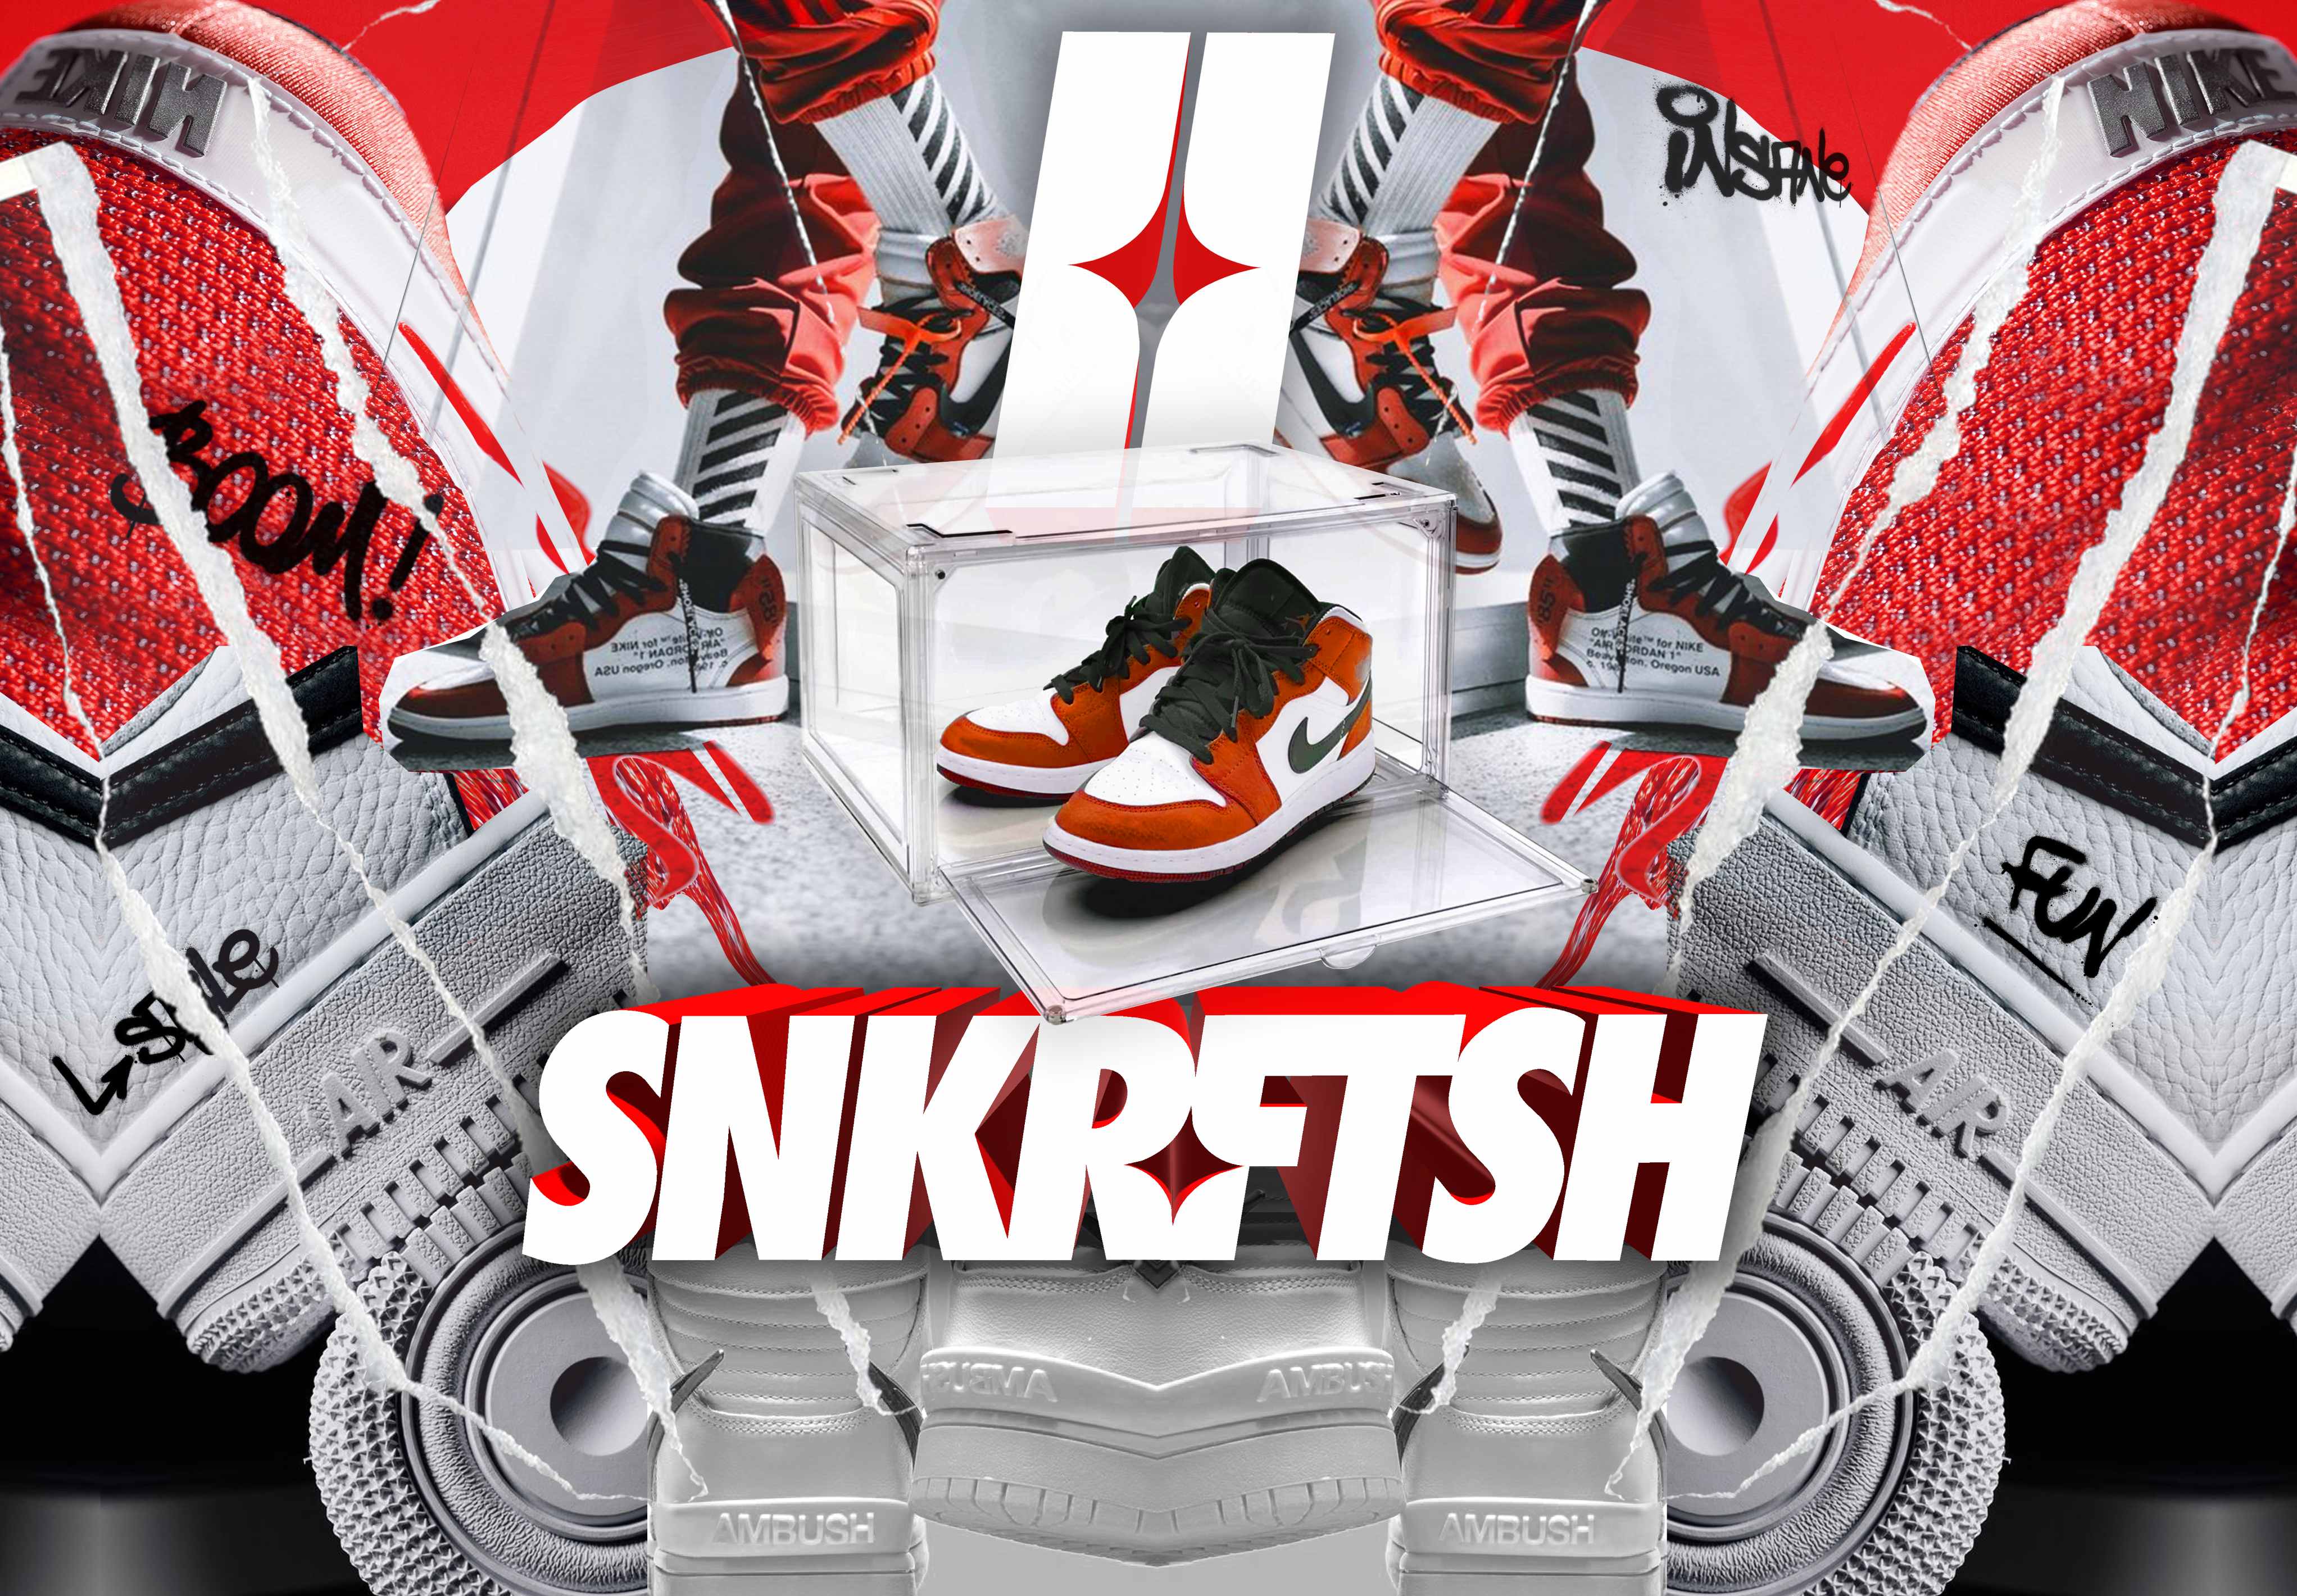 Sneaker Boxes by SNKRFTSH